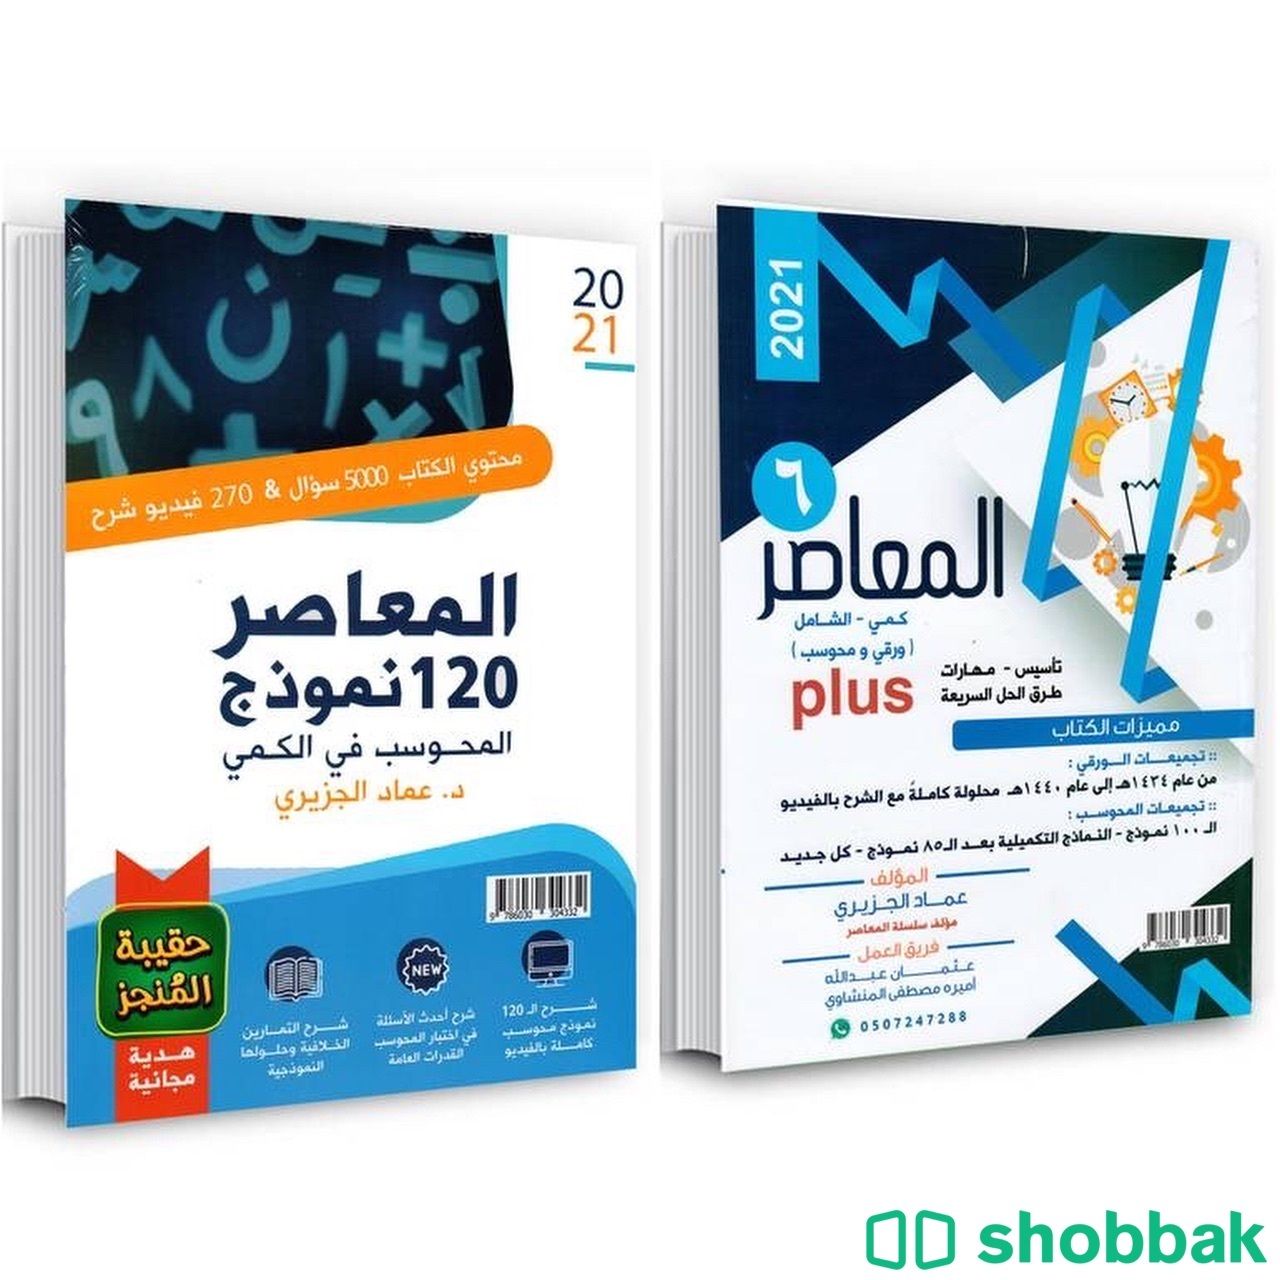 المعاصر ٢٠٢١ و كتاب ١٢٠ كمي محوسب  Shobbak Saudi Arabia